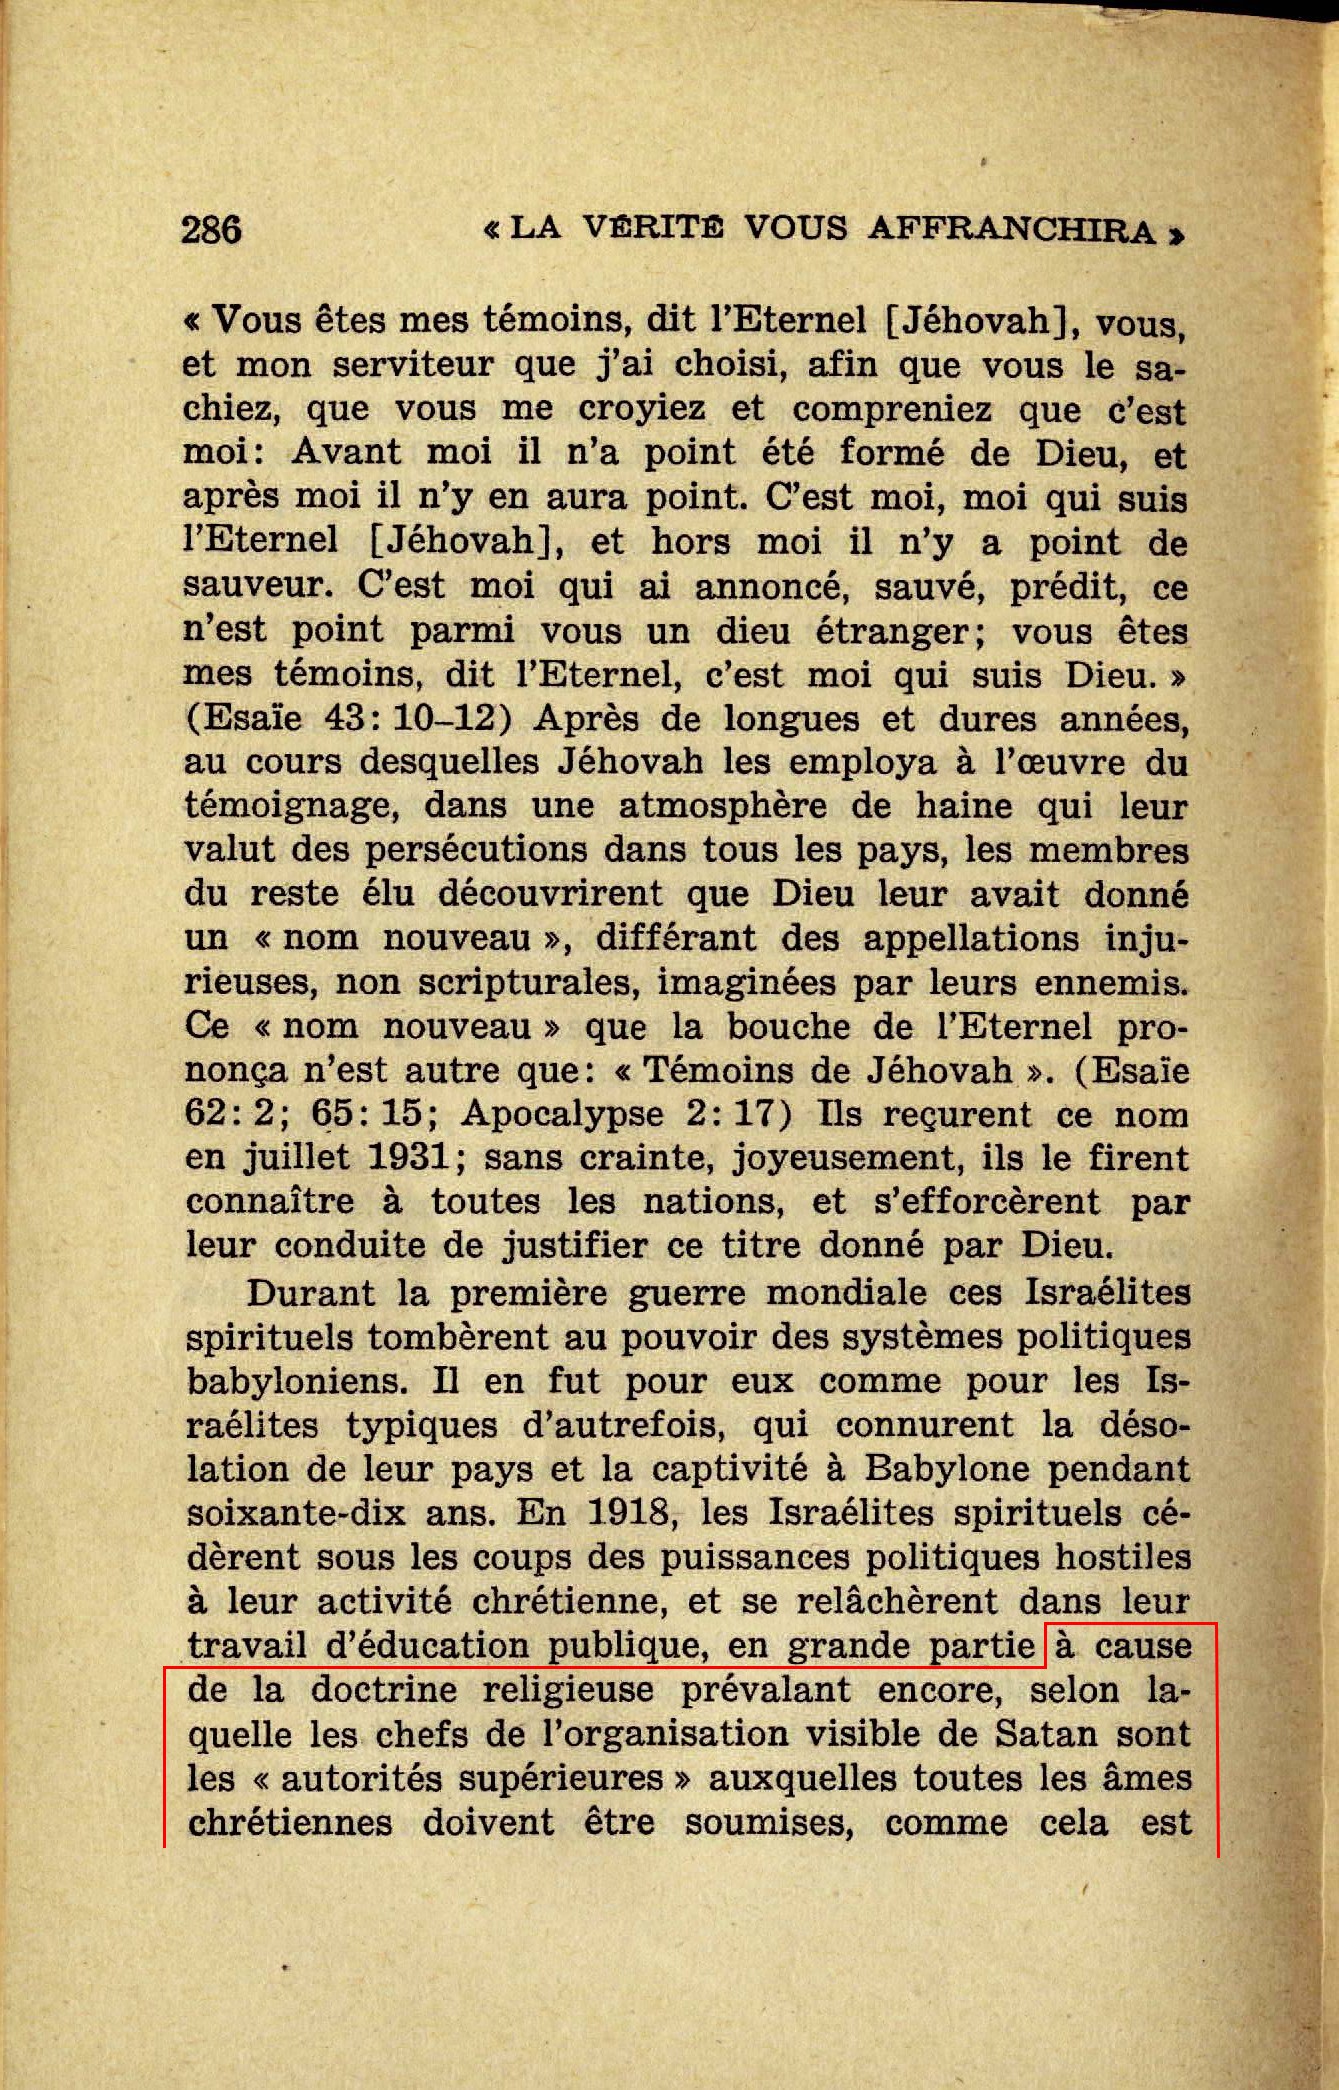 Les autorités supérieures  La-verite-vous-affranchira-1947-p286